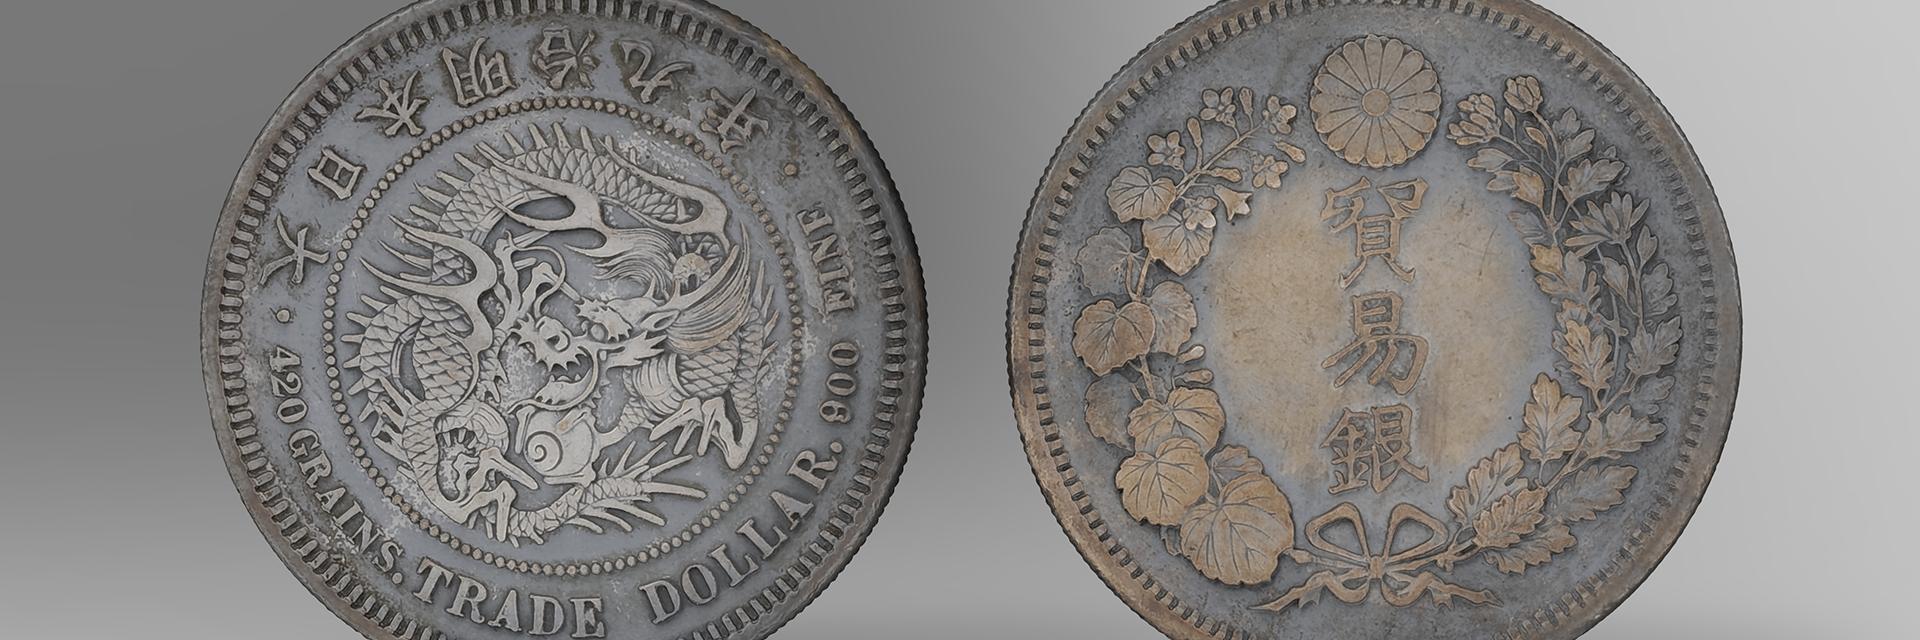 3d digital renders of coins